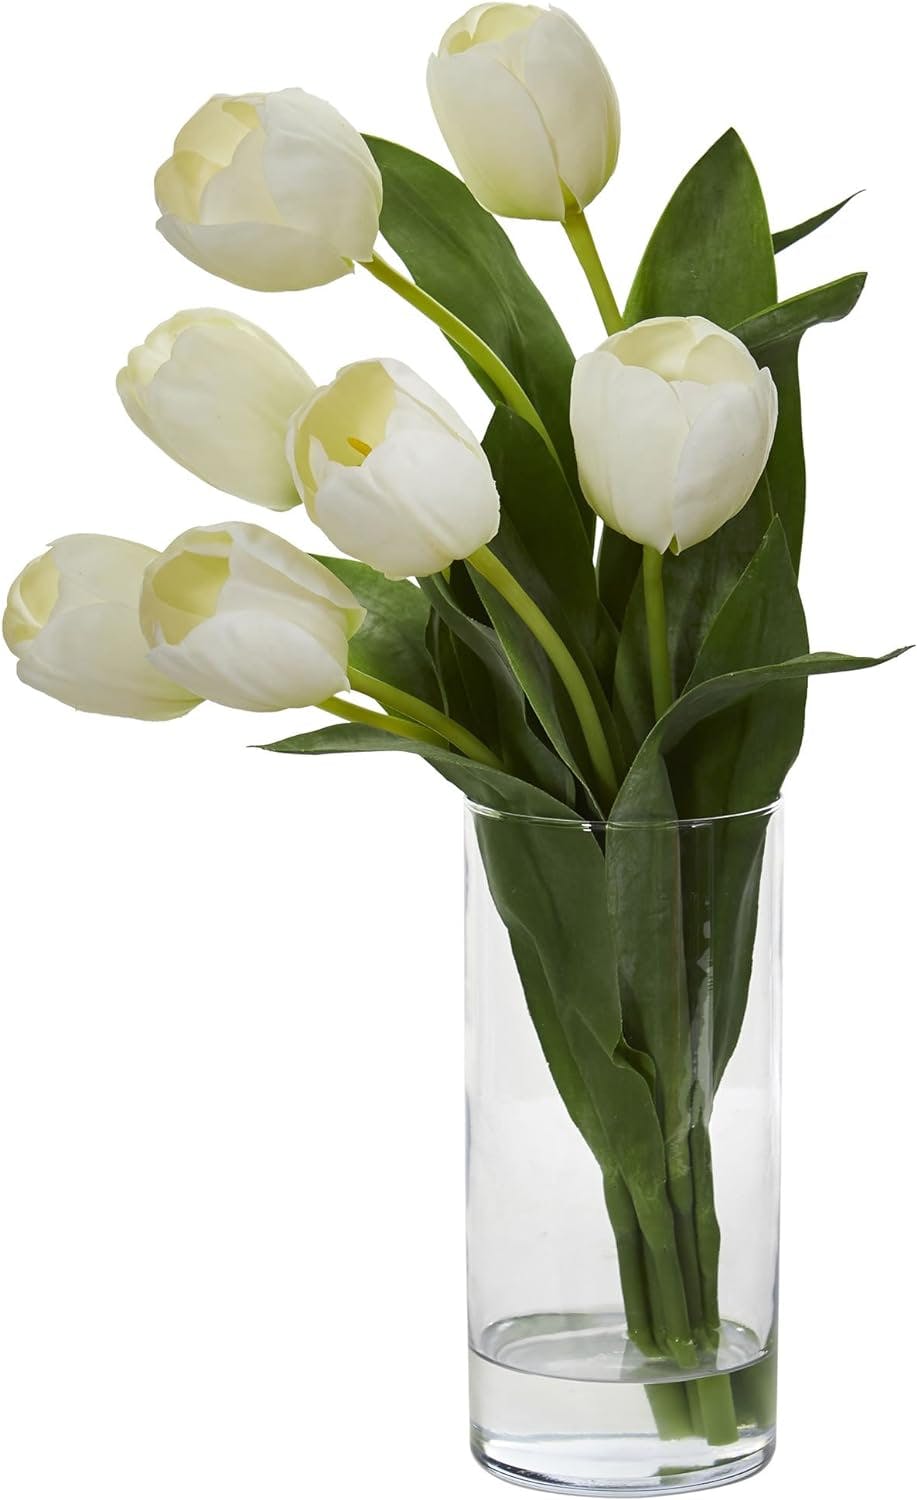 Elegant White Tulip Artificial Arrangement in Minimalist Vase